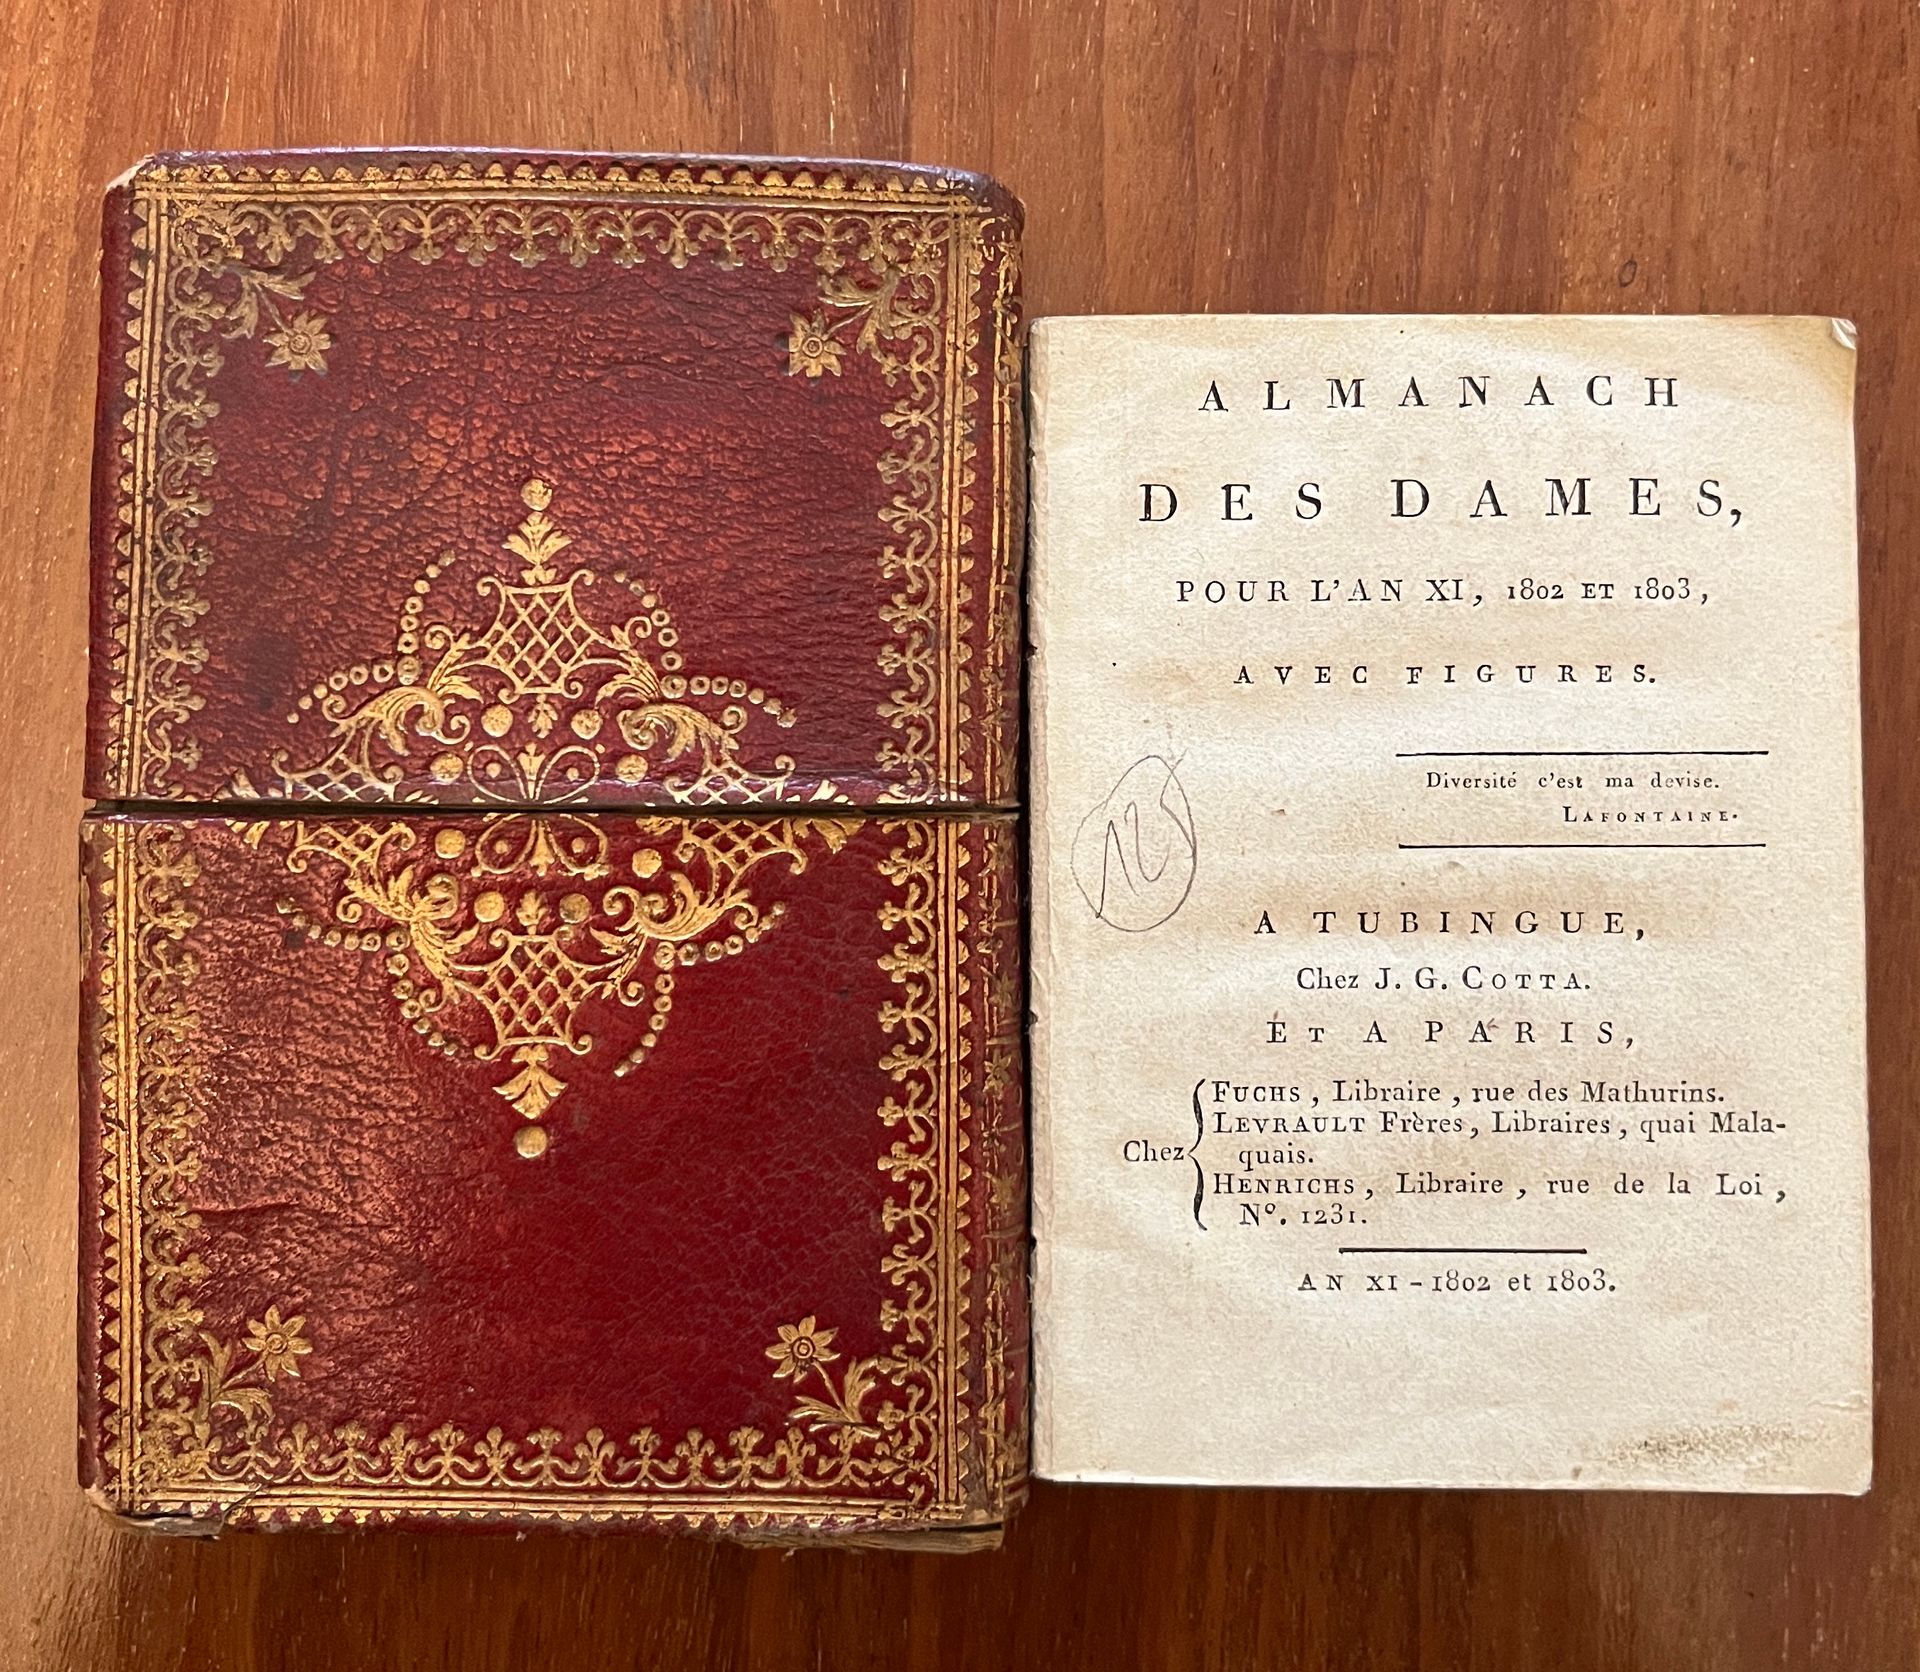 Null [ALMANACH]
Almanach des dames pour l'an XI, 1802 et 1803. Tubingue, chez J.&hellip;